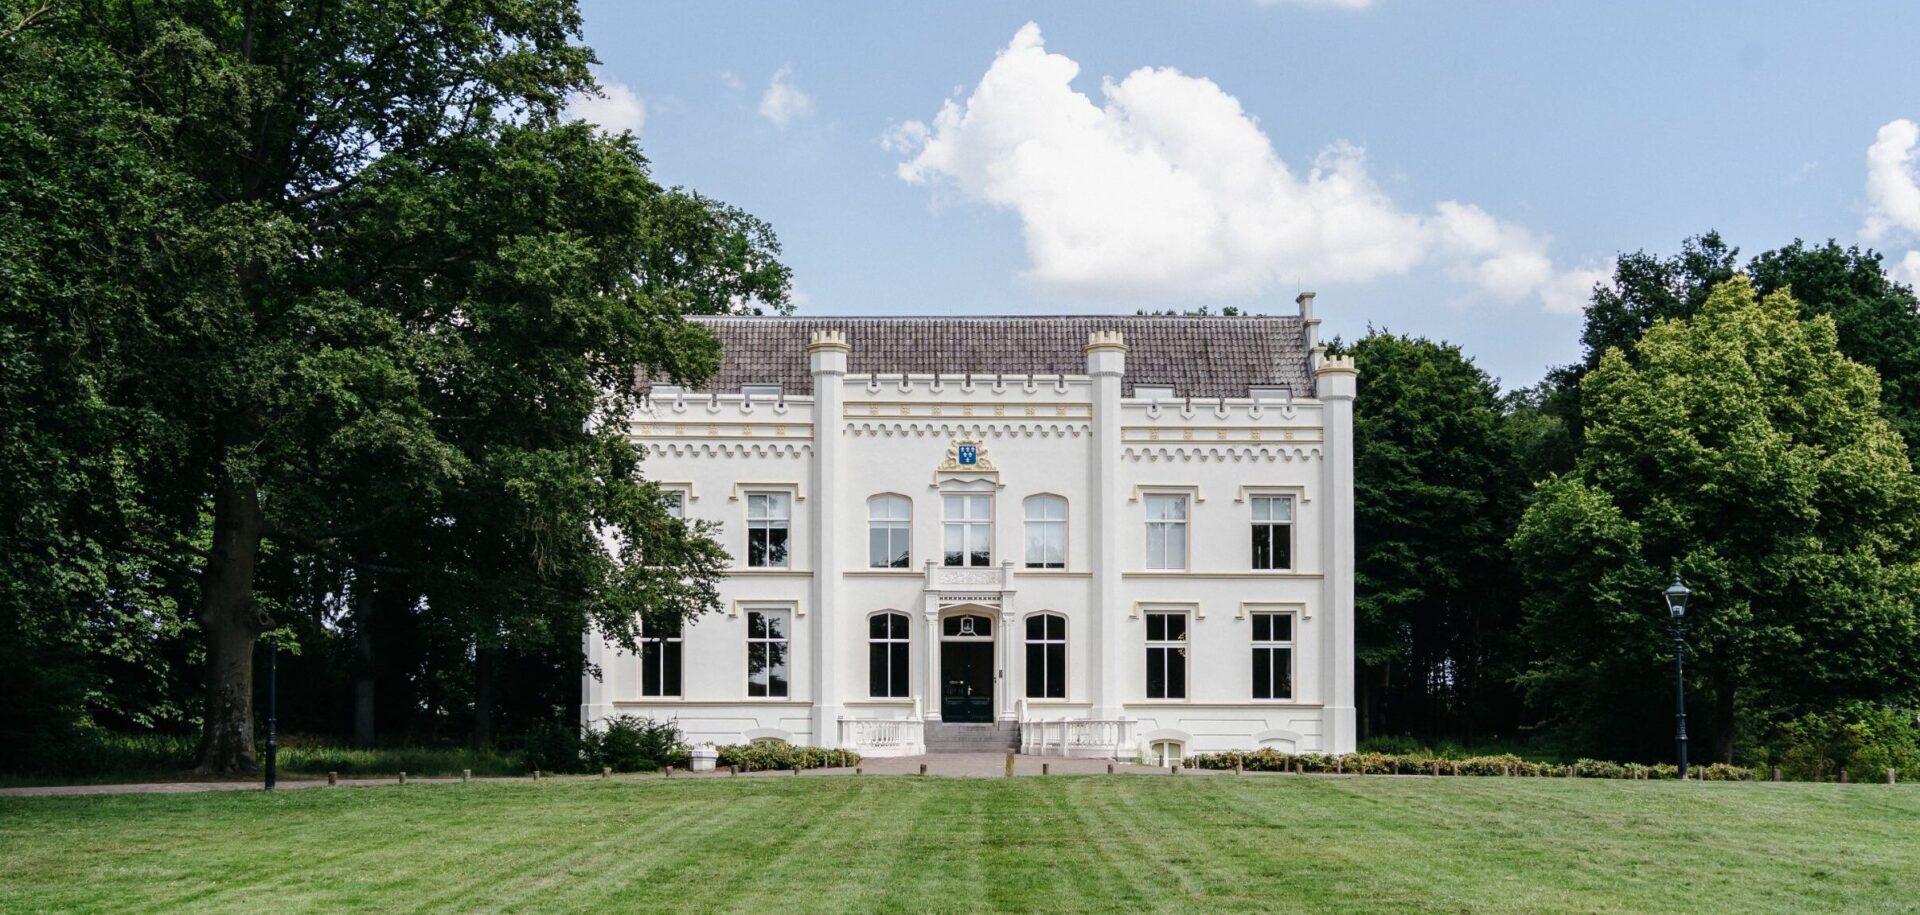 Huis Scherpenzeel is een prachtig landhuis in een klein dorpje onder Veenendaal. Het heeft een rijke geschiedenis en valt nu onder één van de drie locaties van Swijnenburg